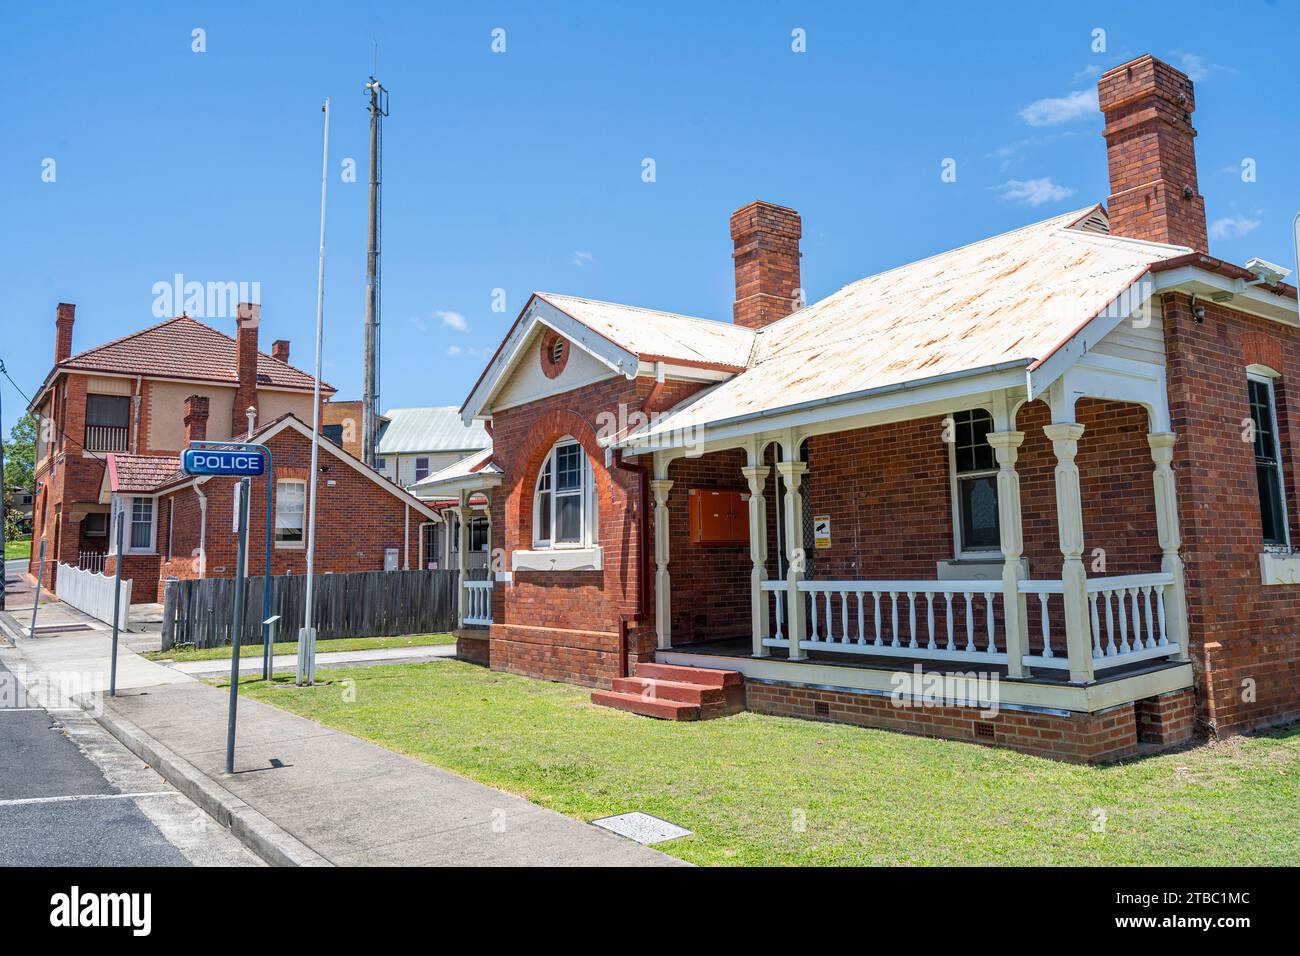 Vue extérieure du poste de police en briques. MacLean, Nouvelle-Galles du Sud, Australie Banque D'Images